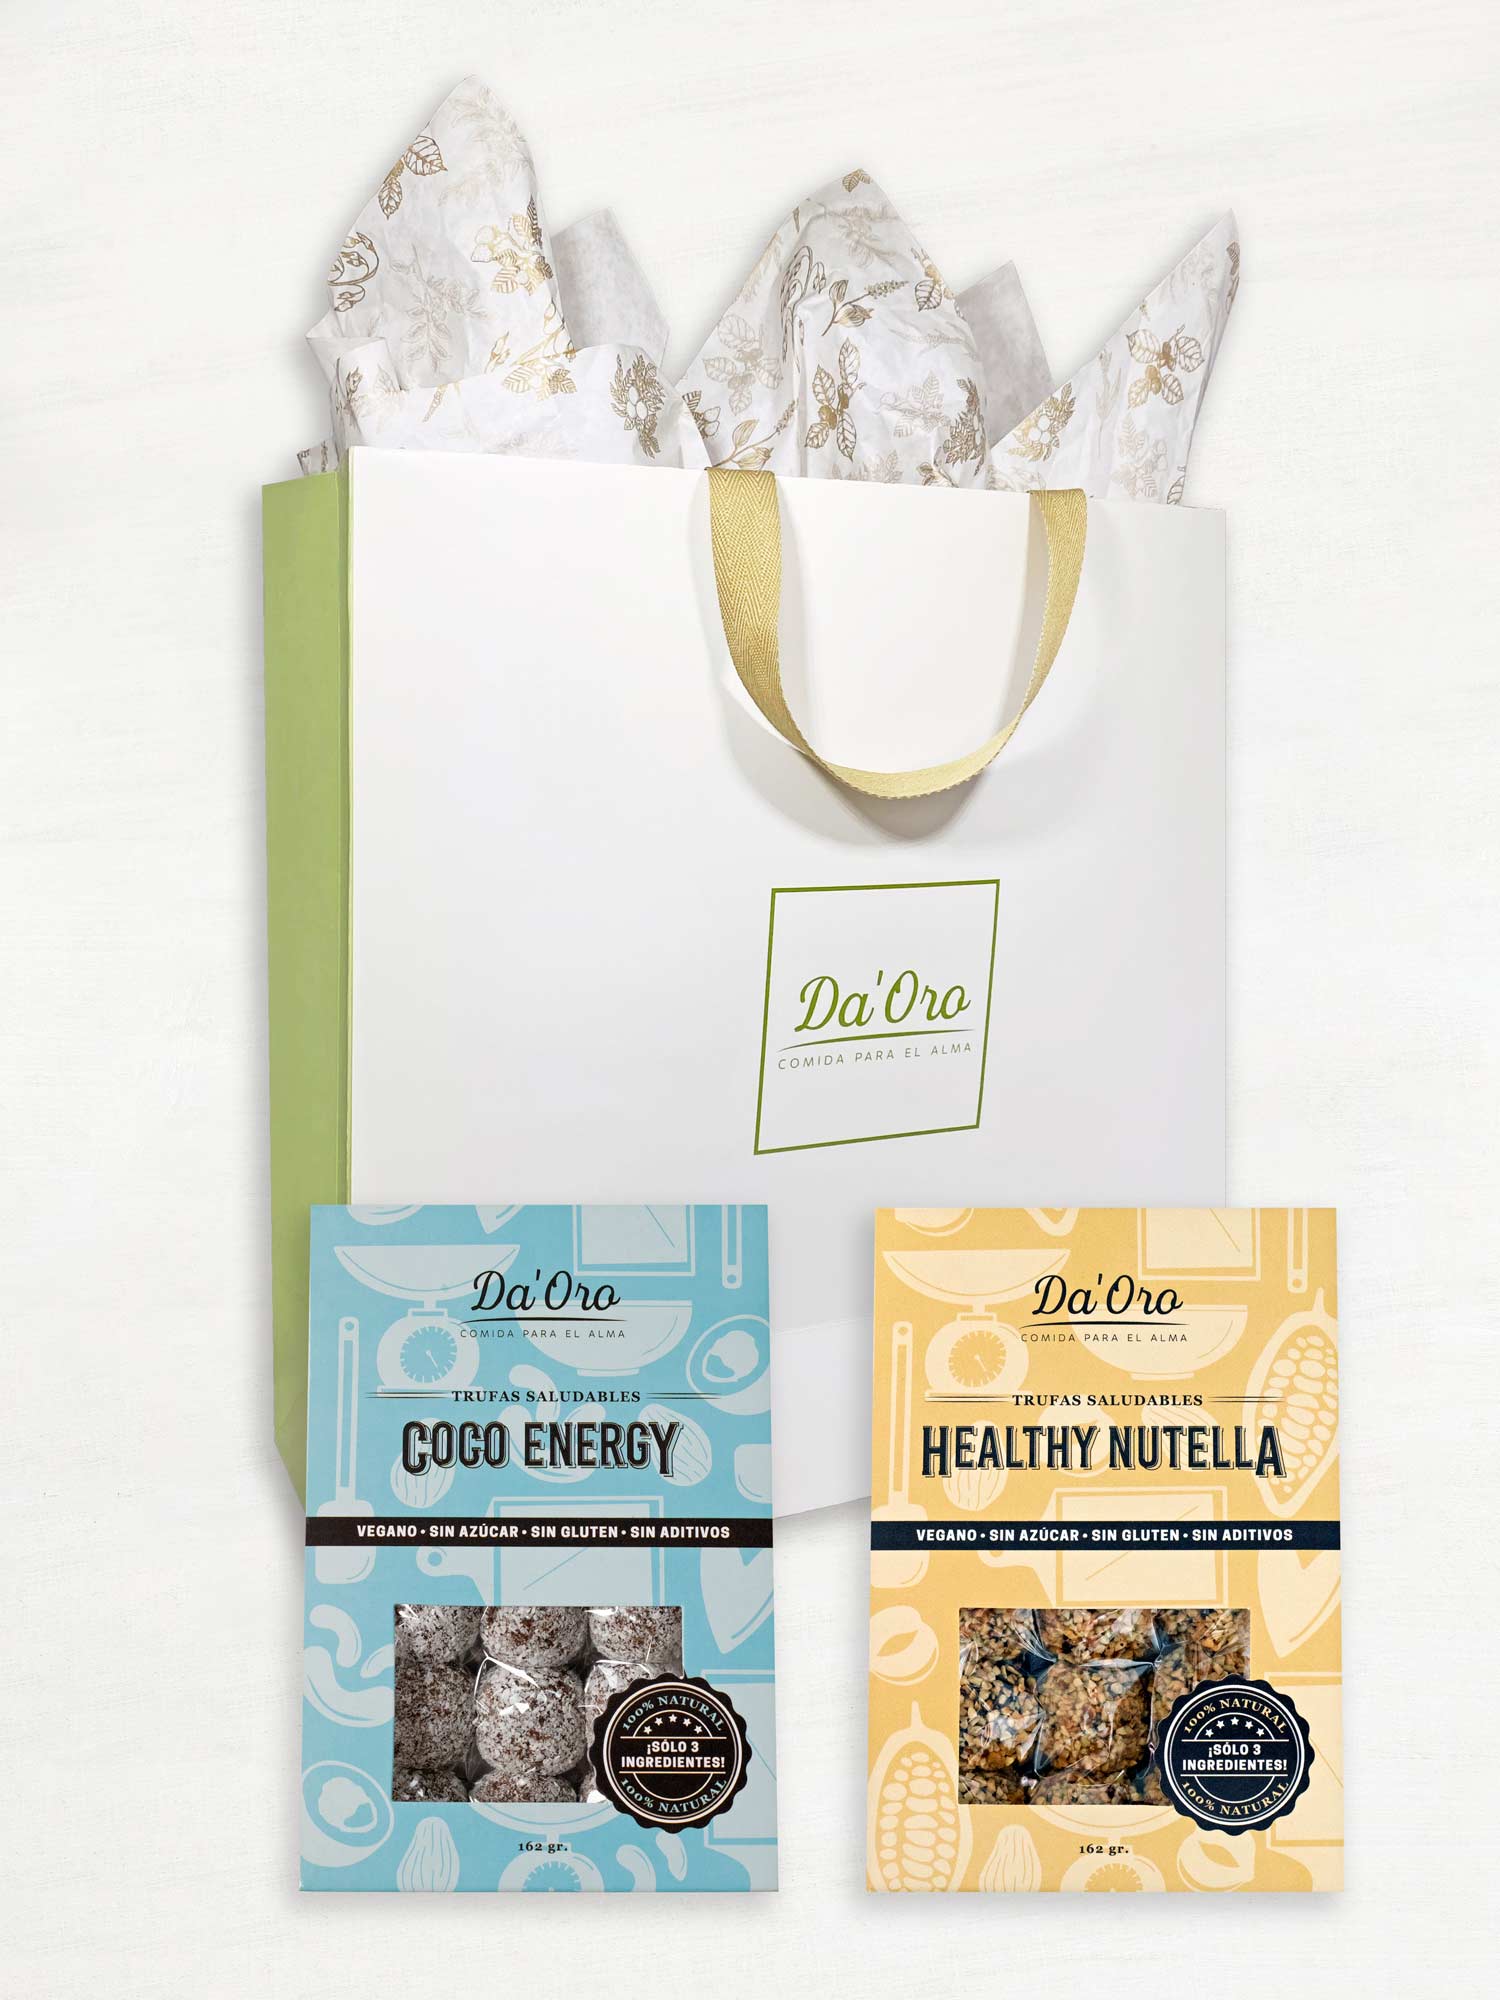 Bolsa de regalo marca Da'Oro con una caja de trufa healthy nutella y una caja de trufa coco energy